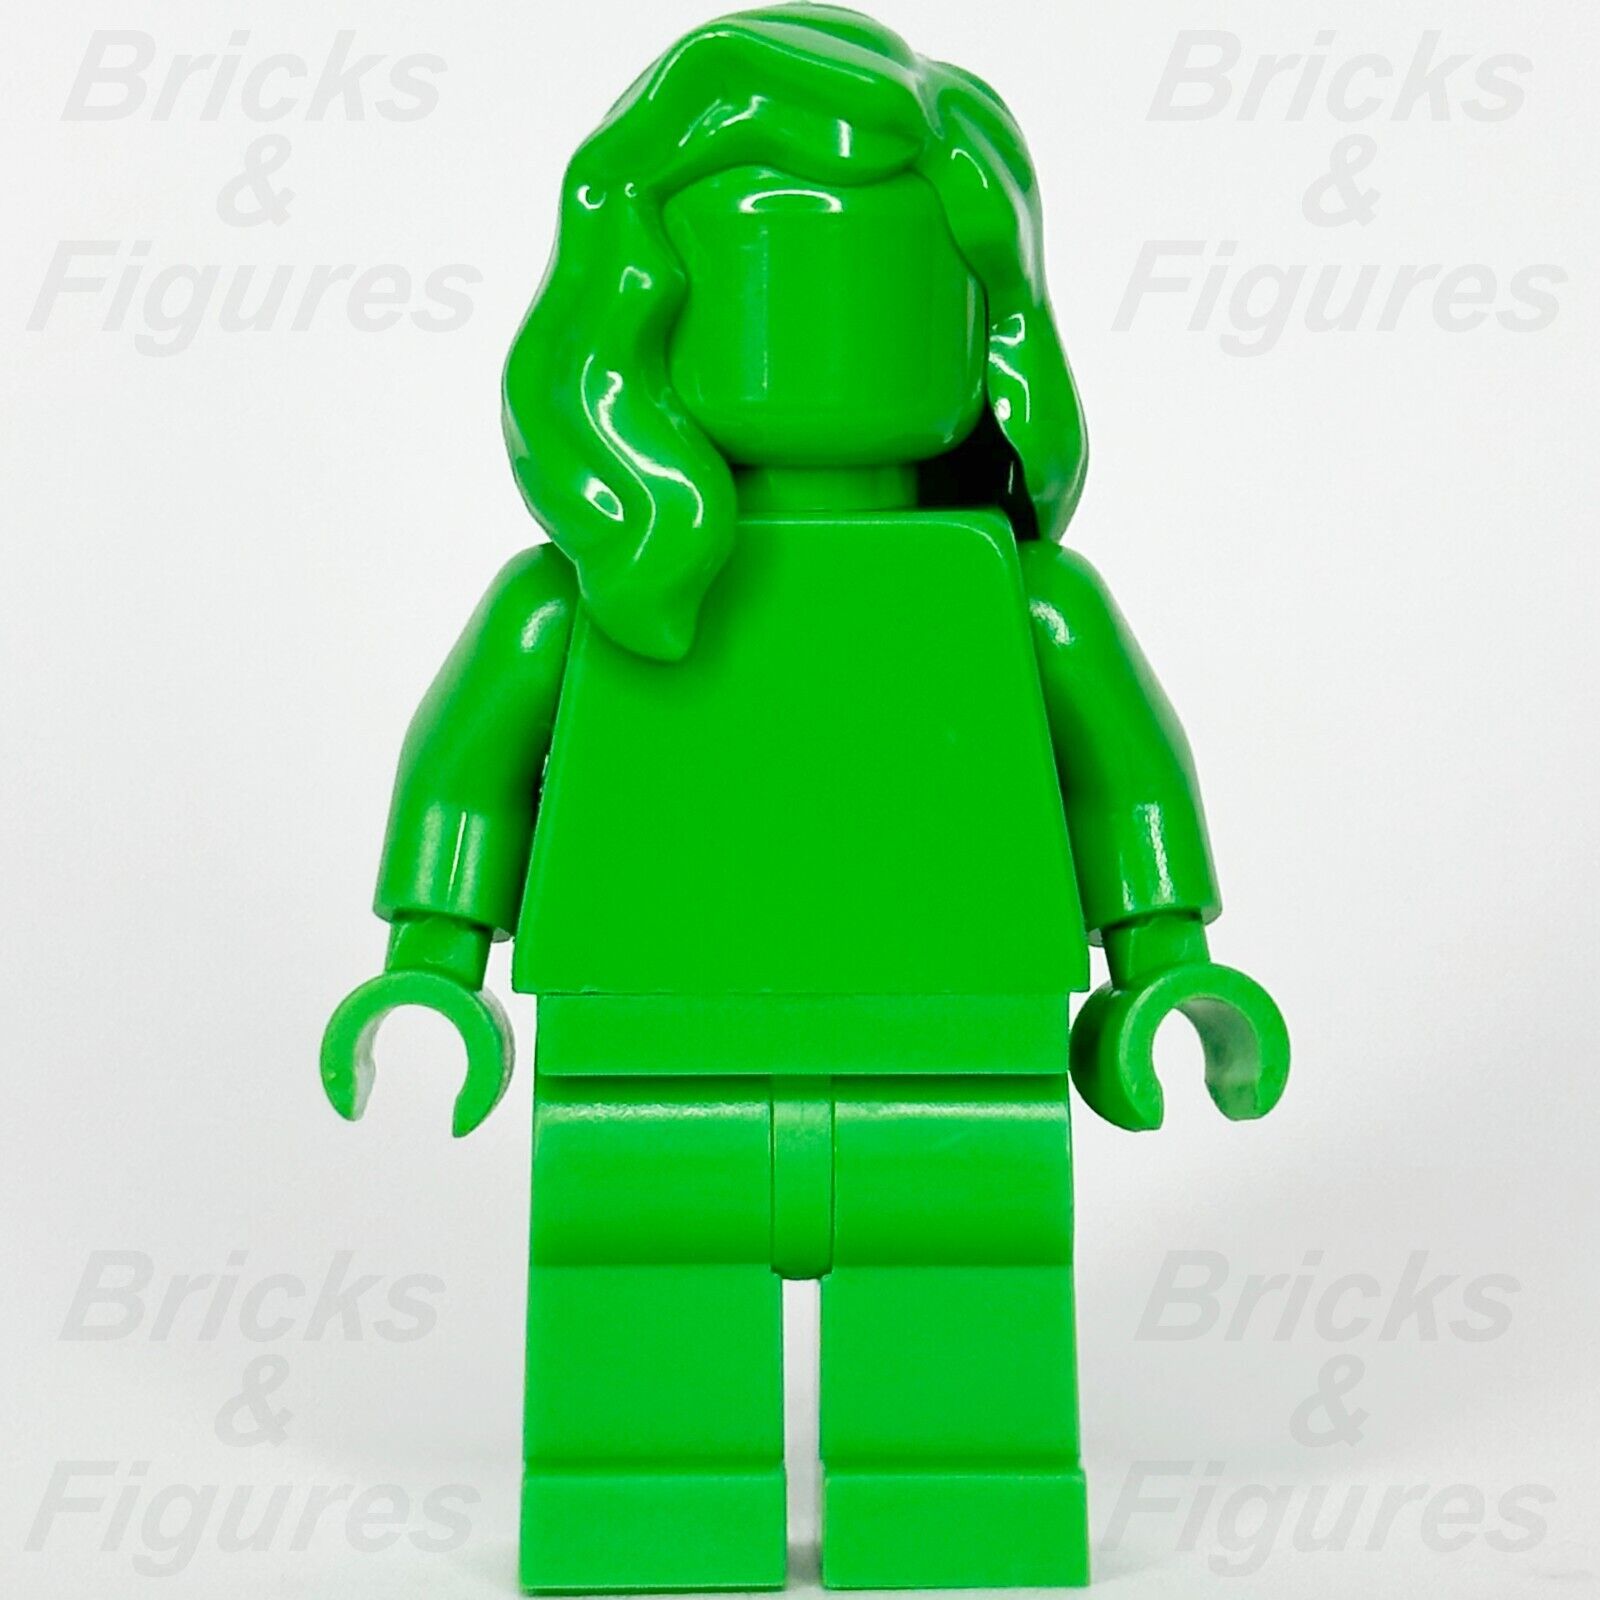 レゴ みんなすごい ブライトグリーン ミニフィギュア モノクロ 40516 tls105